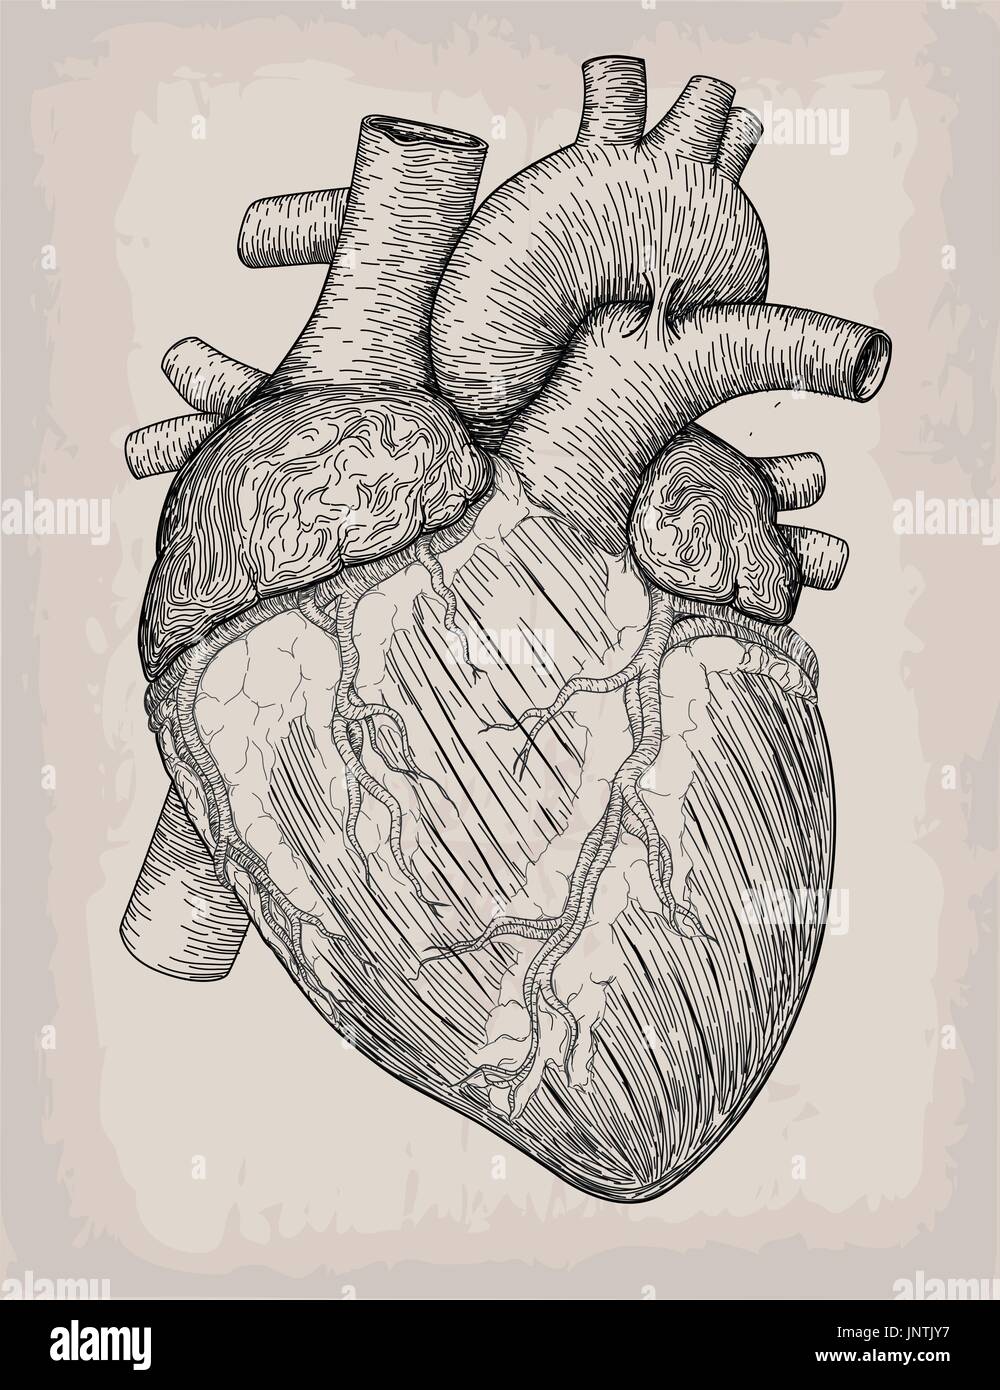 Coeur de l'homme faites à la main. Croquis anatomiques. La médecine, la gravure d'illustration vectorielle, l'élément. Haut tatouage anatomique détaillée des éléments de la base de l'art. Illustration de Vecteur